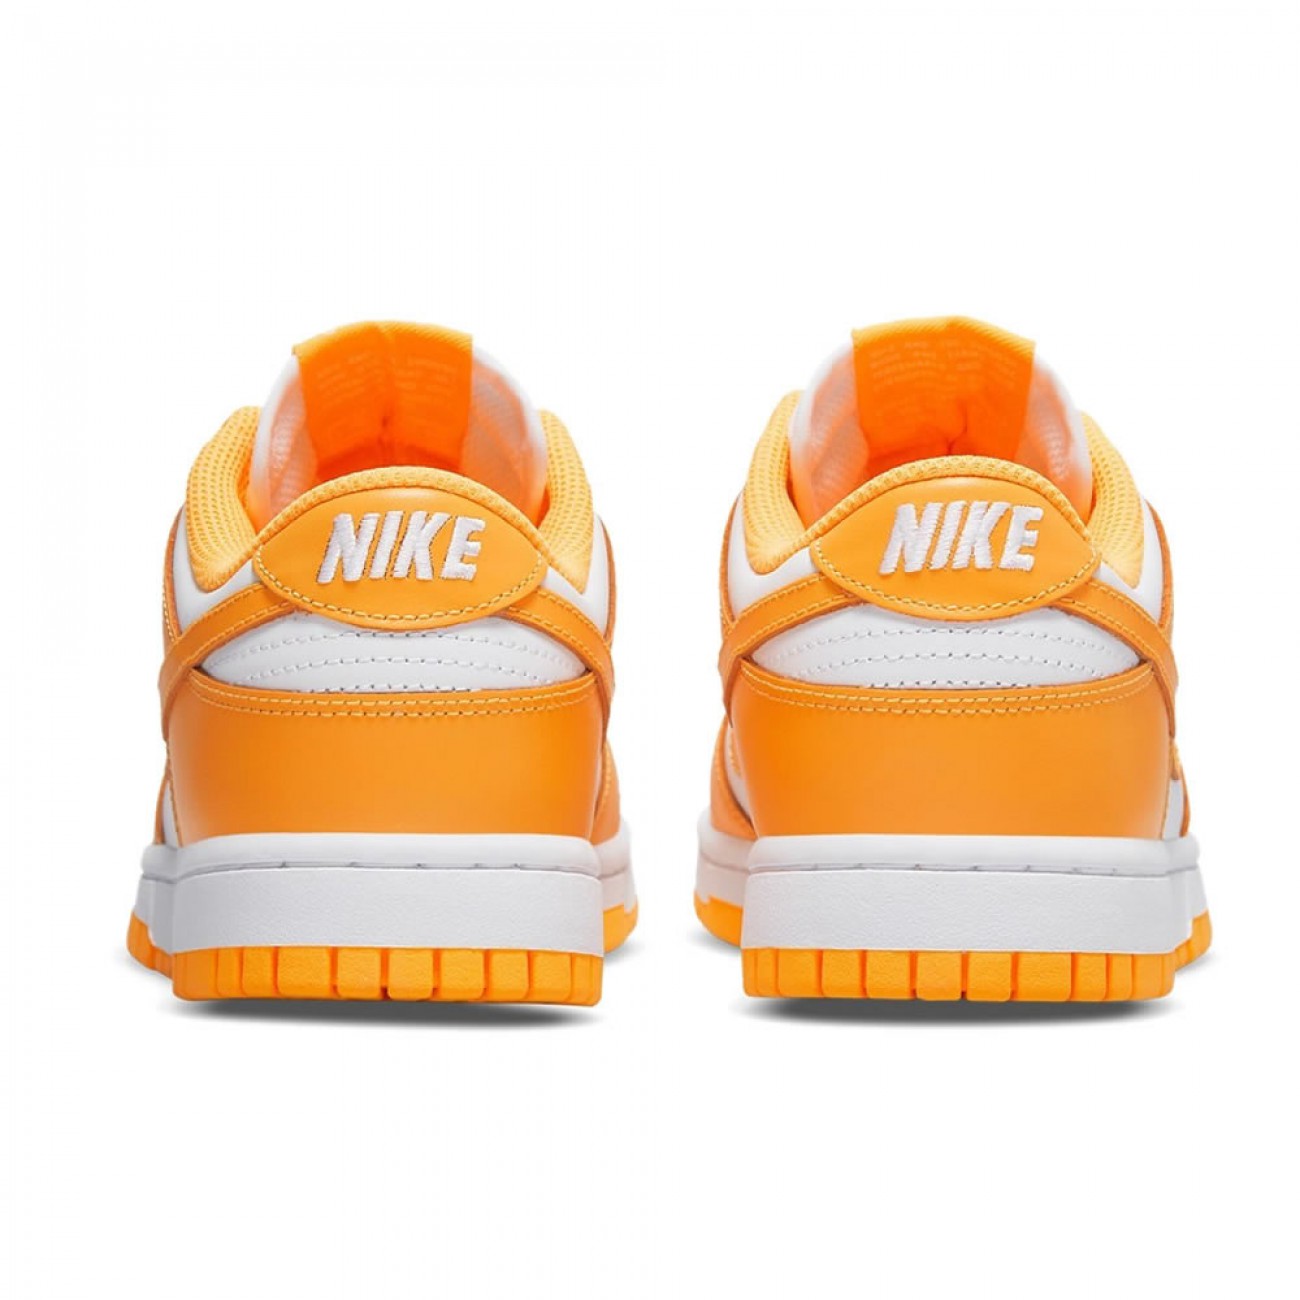 Nike Dunk Low "Laser Orange" DD1503-800